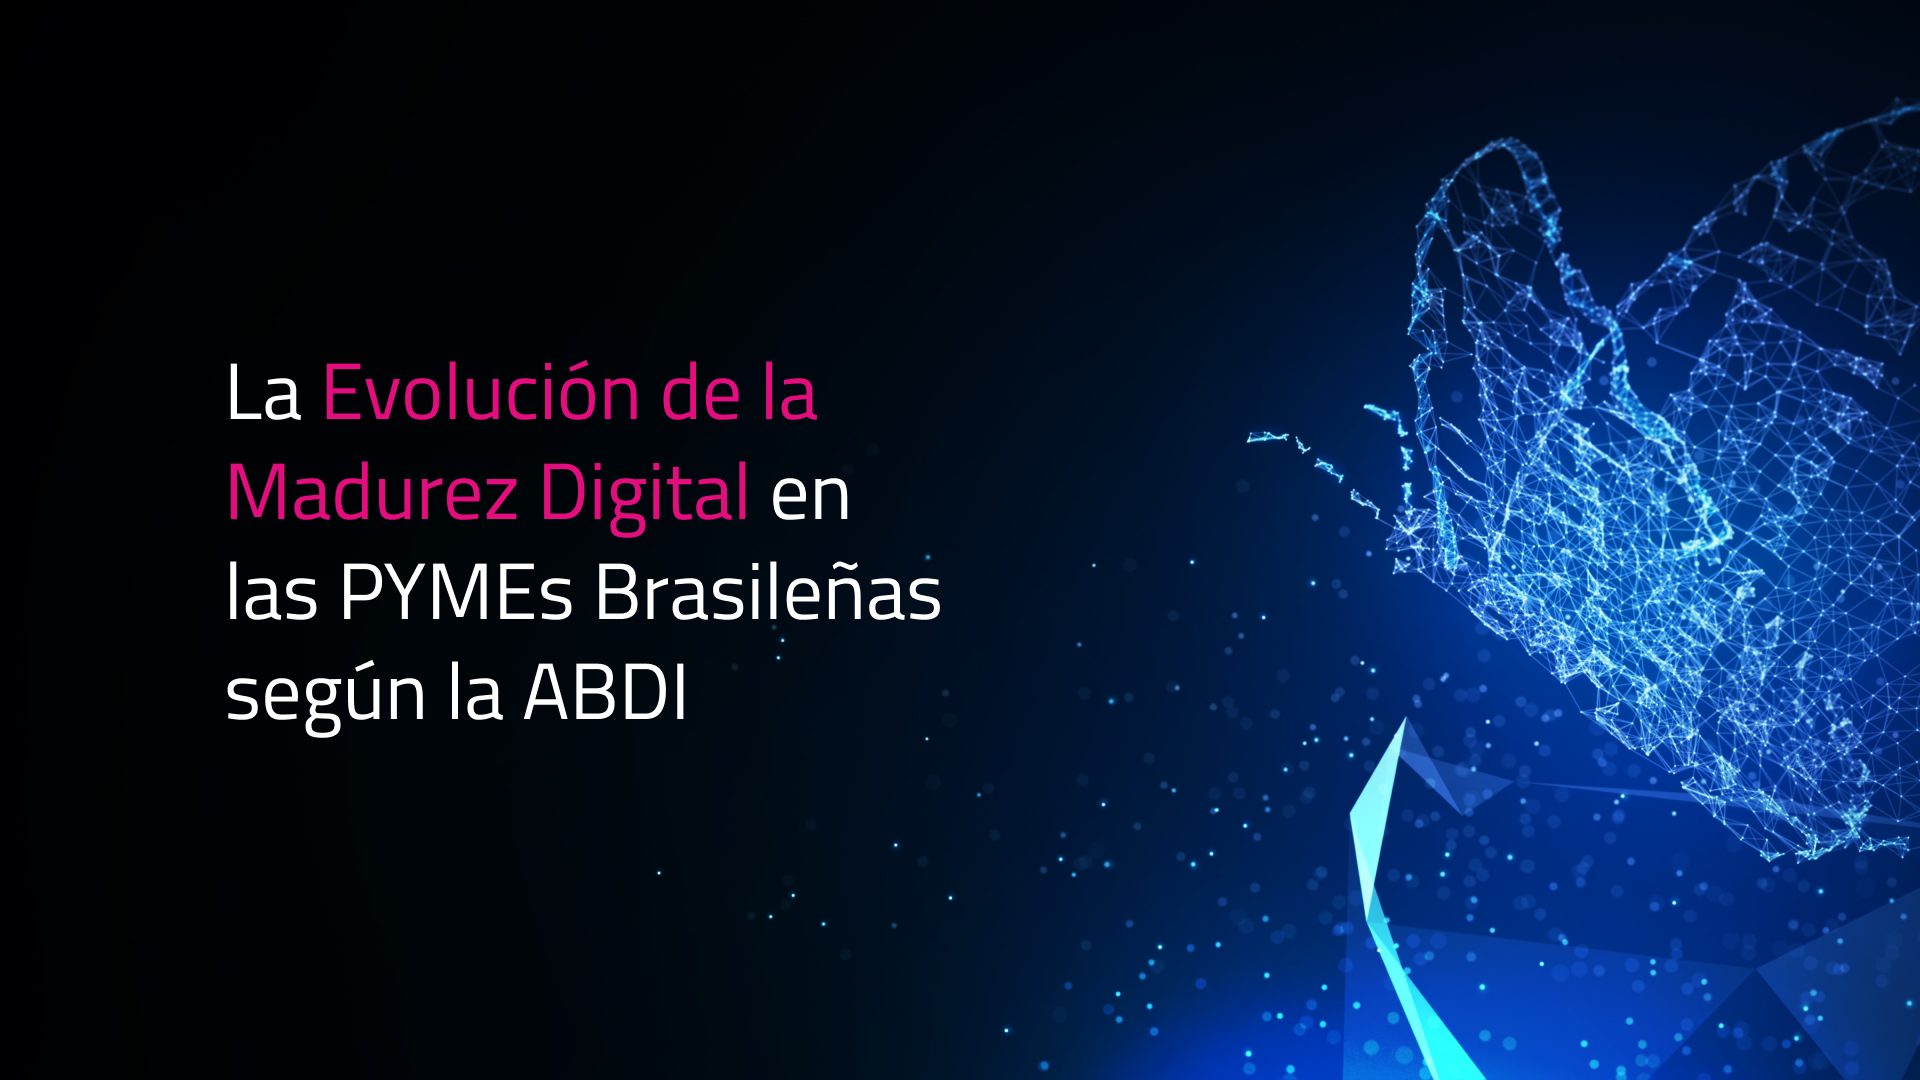 La Evolución de la Madurez Digital en las PYMEs Brasileñas según la ABDI